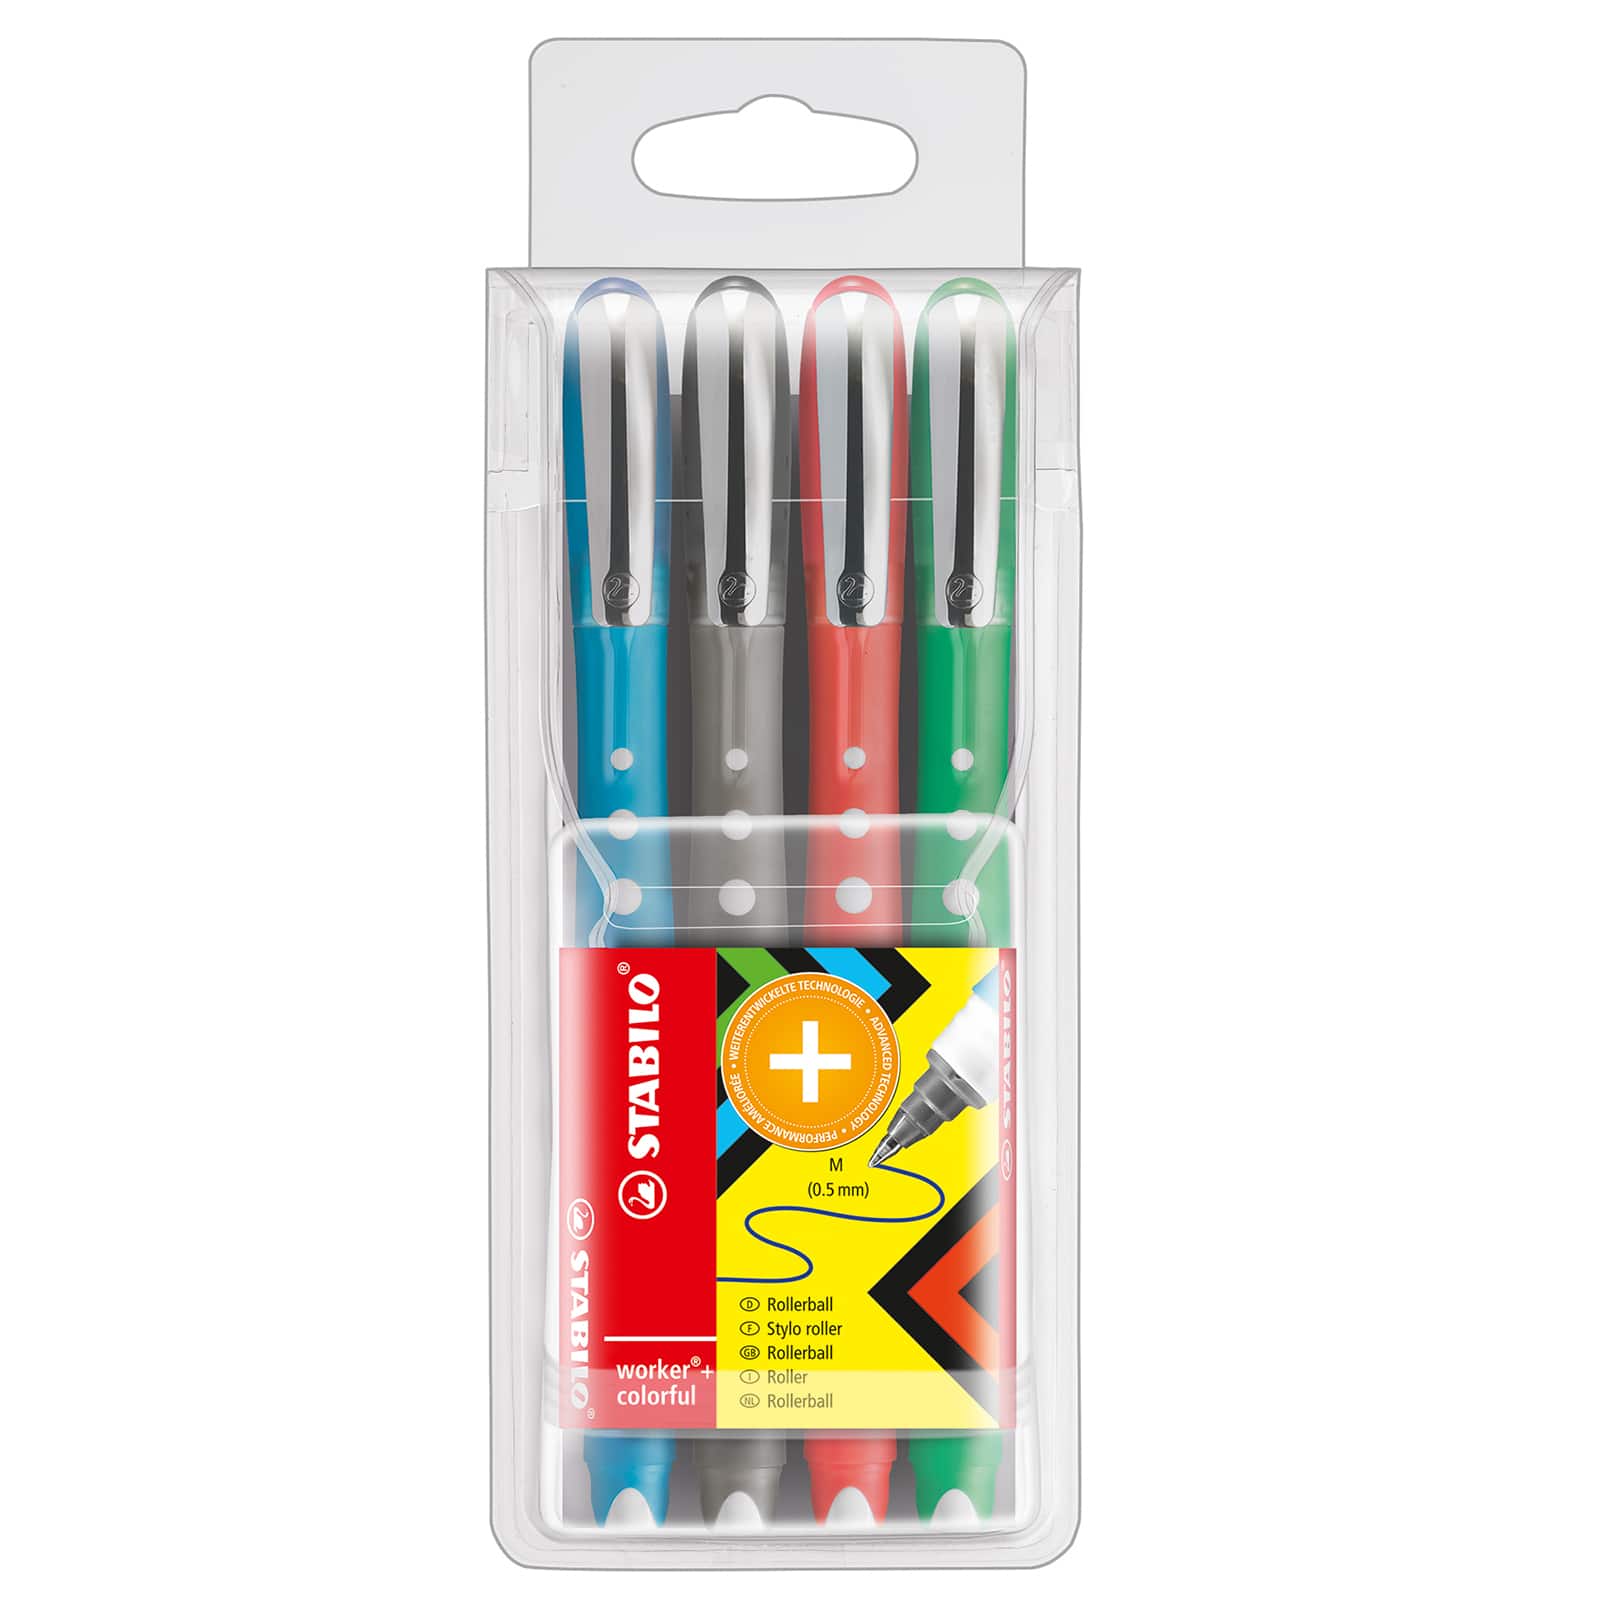 Worker Colorful Pen 4 Color Wallet Set | Michaels